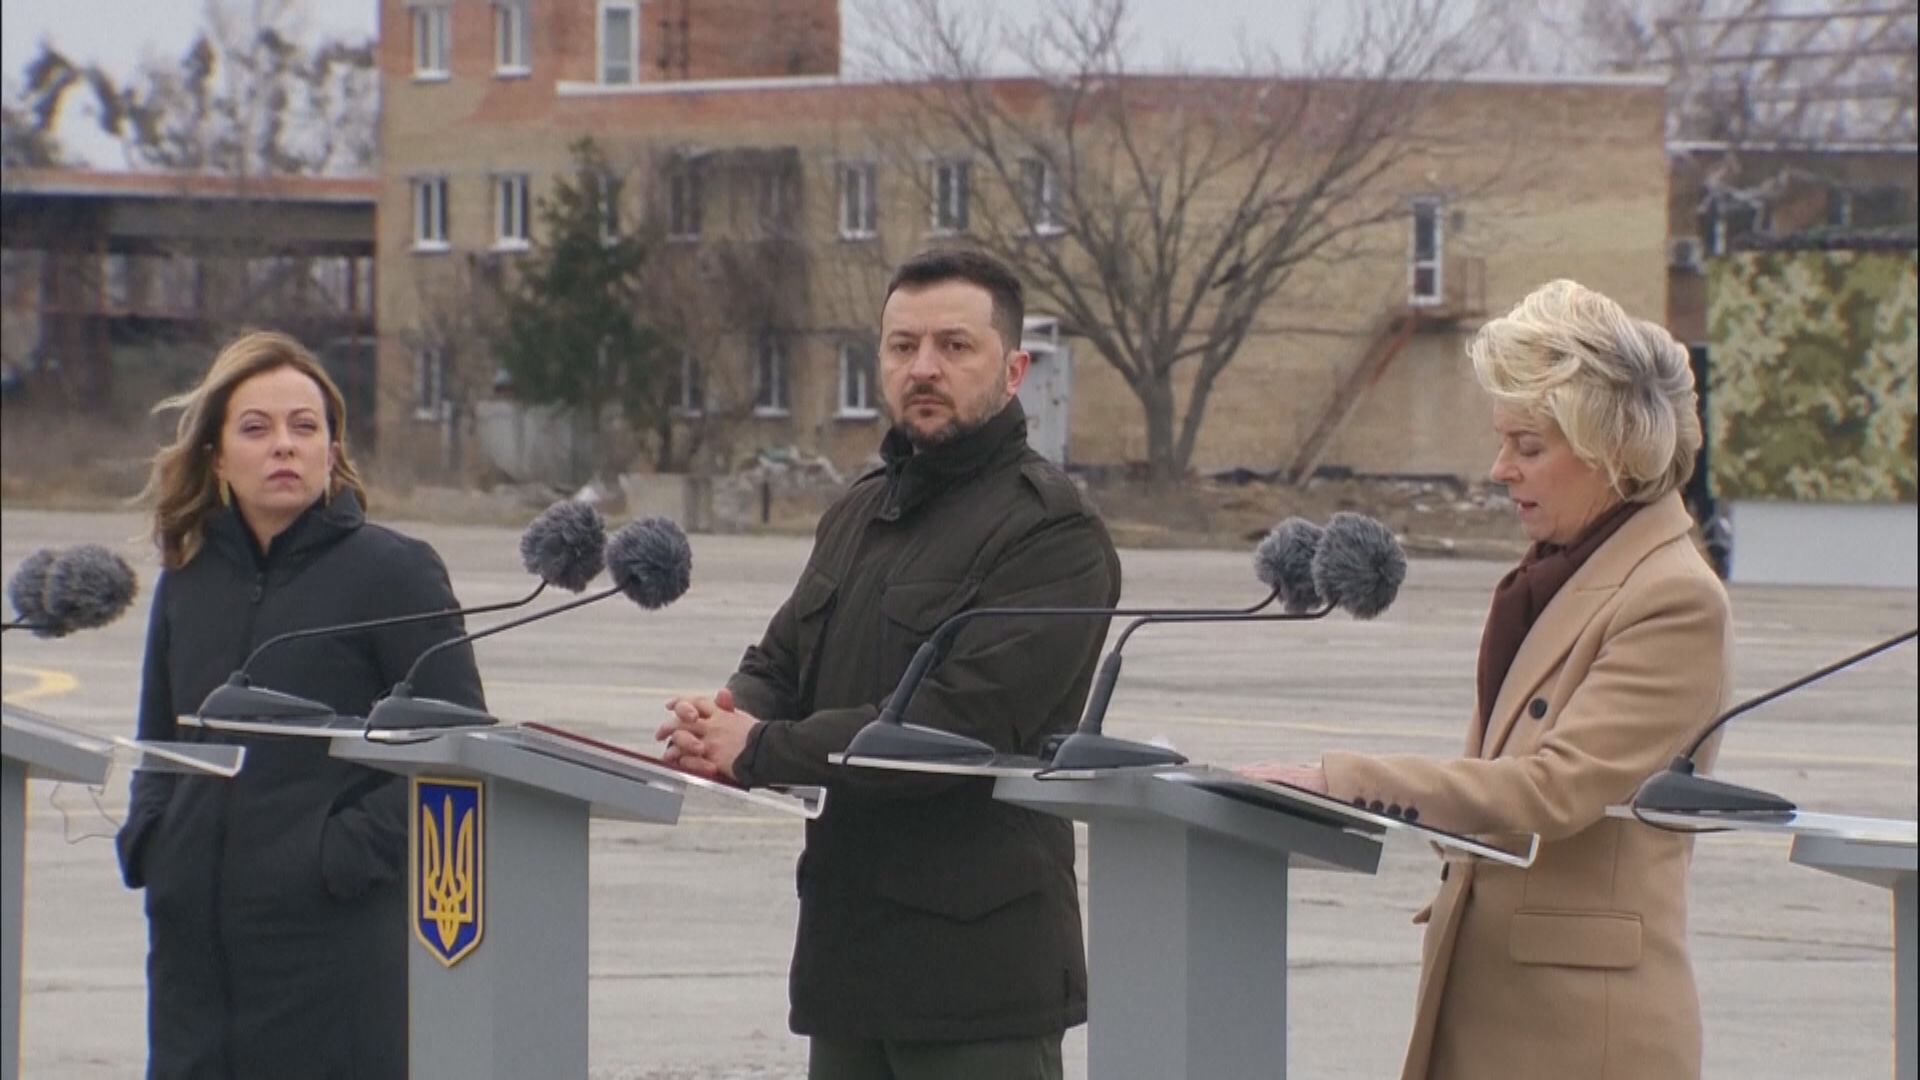 俄烏戰事兩周年 西方領袖訪基輔展示團結支持烏方立場